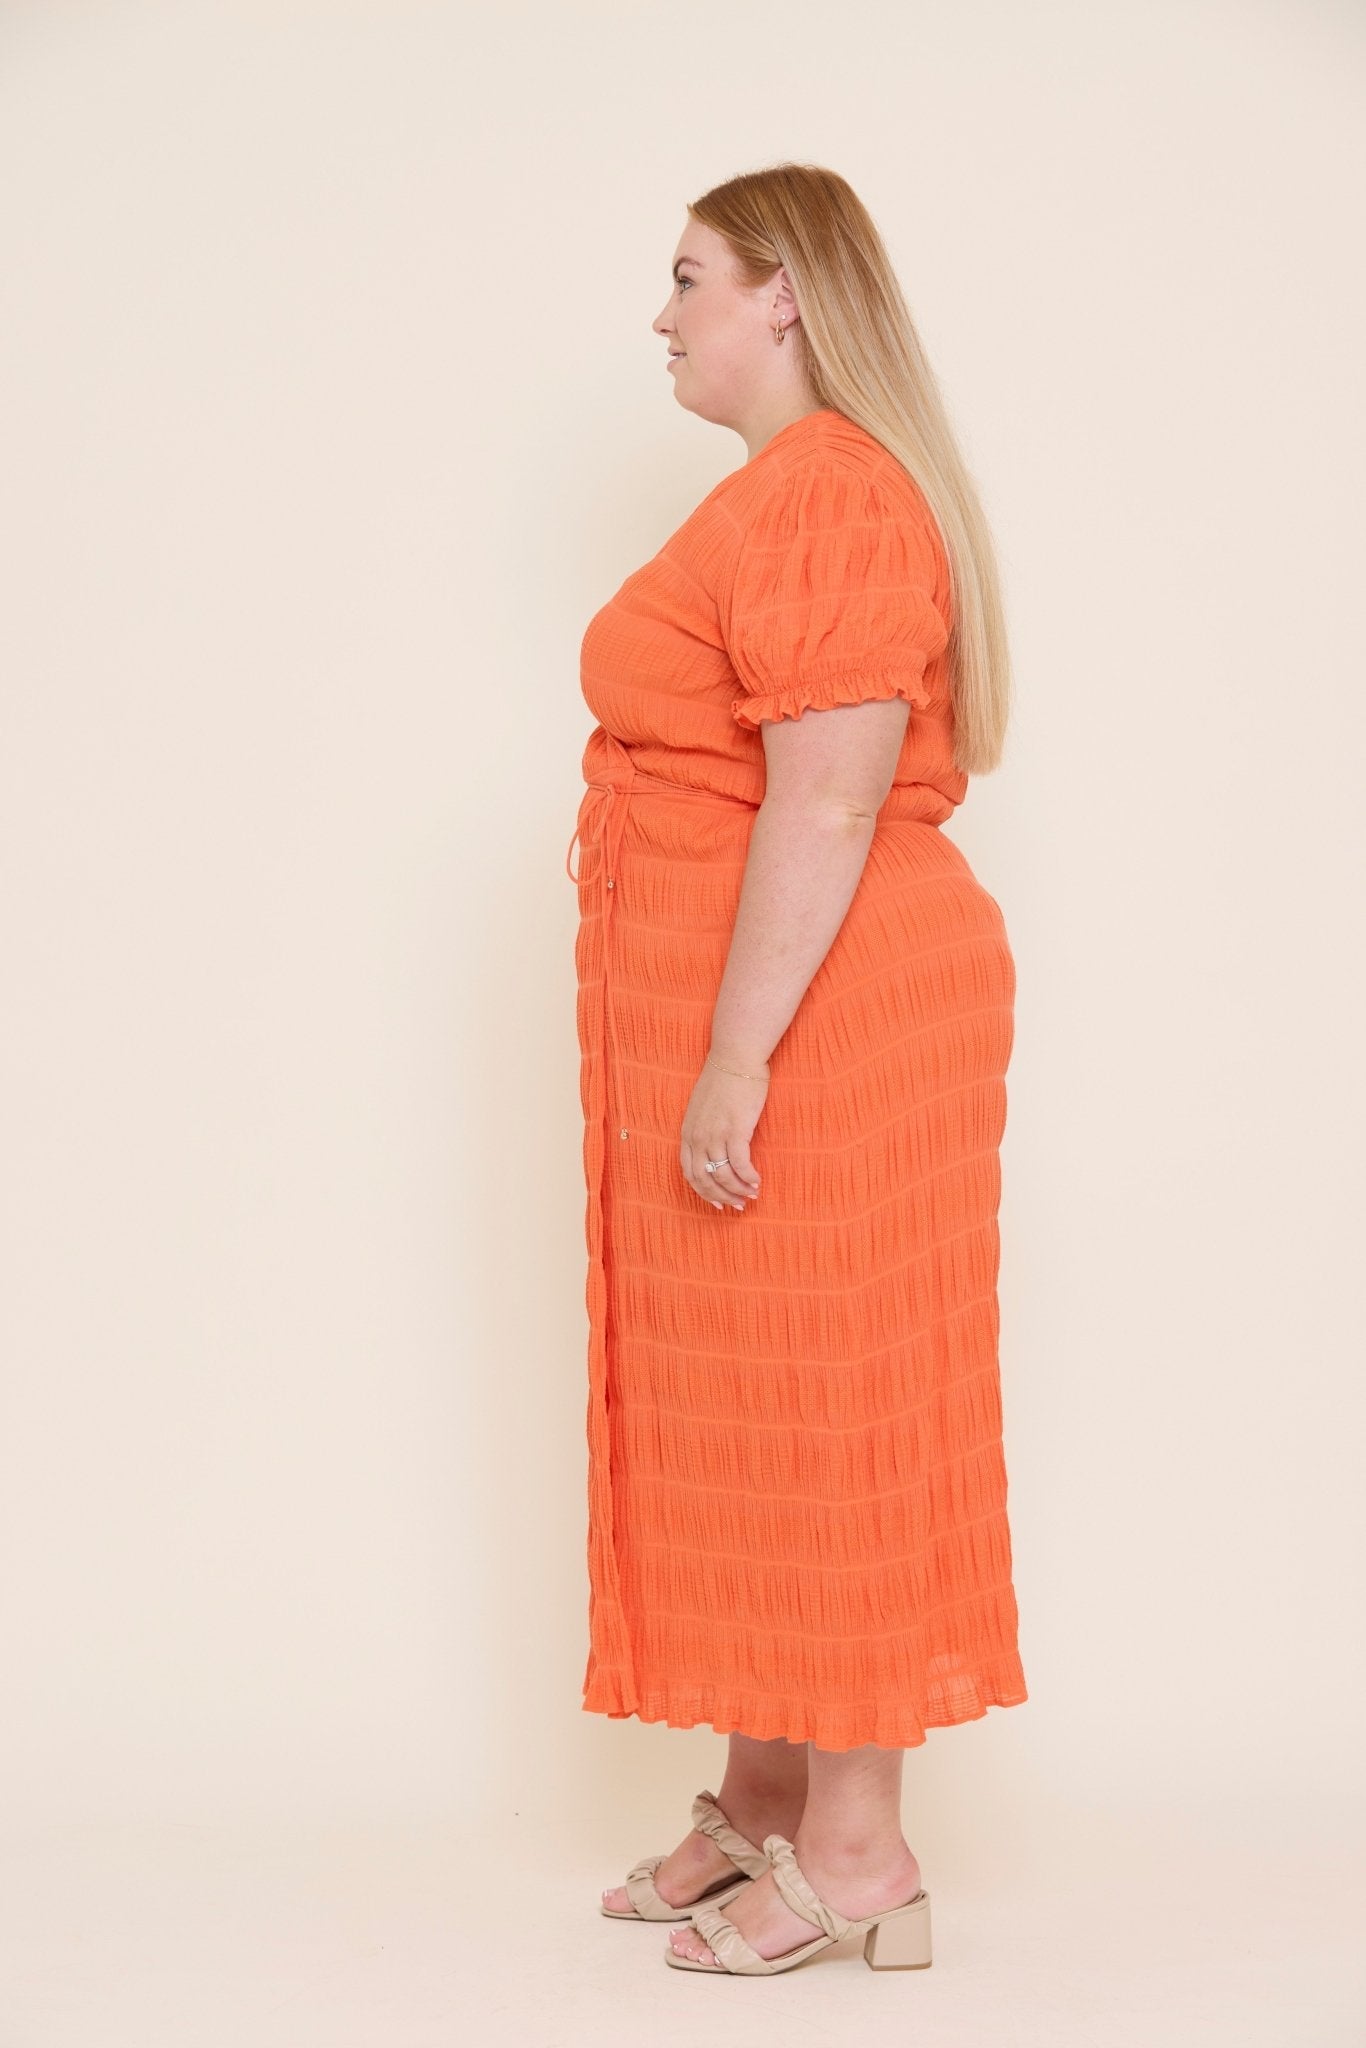 RUBY Mirella Short Sleeve Wrap Dress - Size 20 - Love & Lend